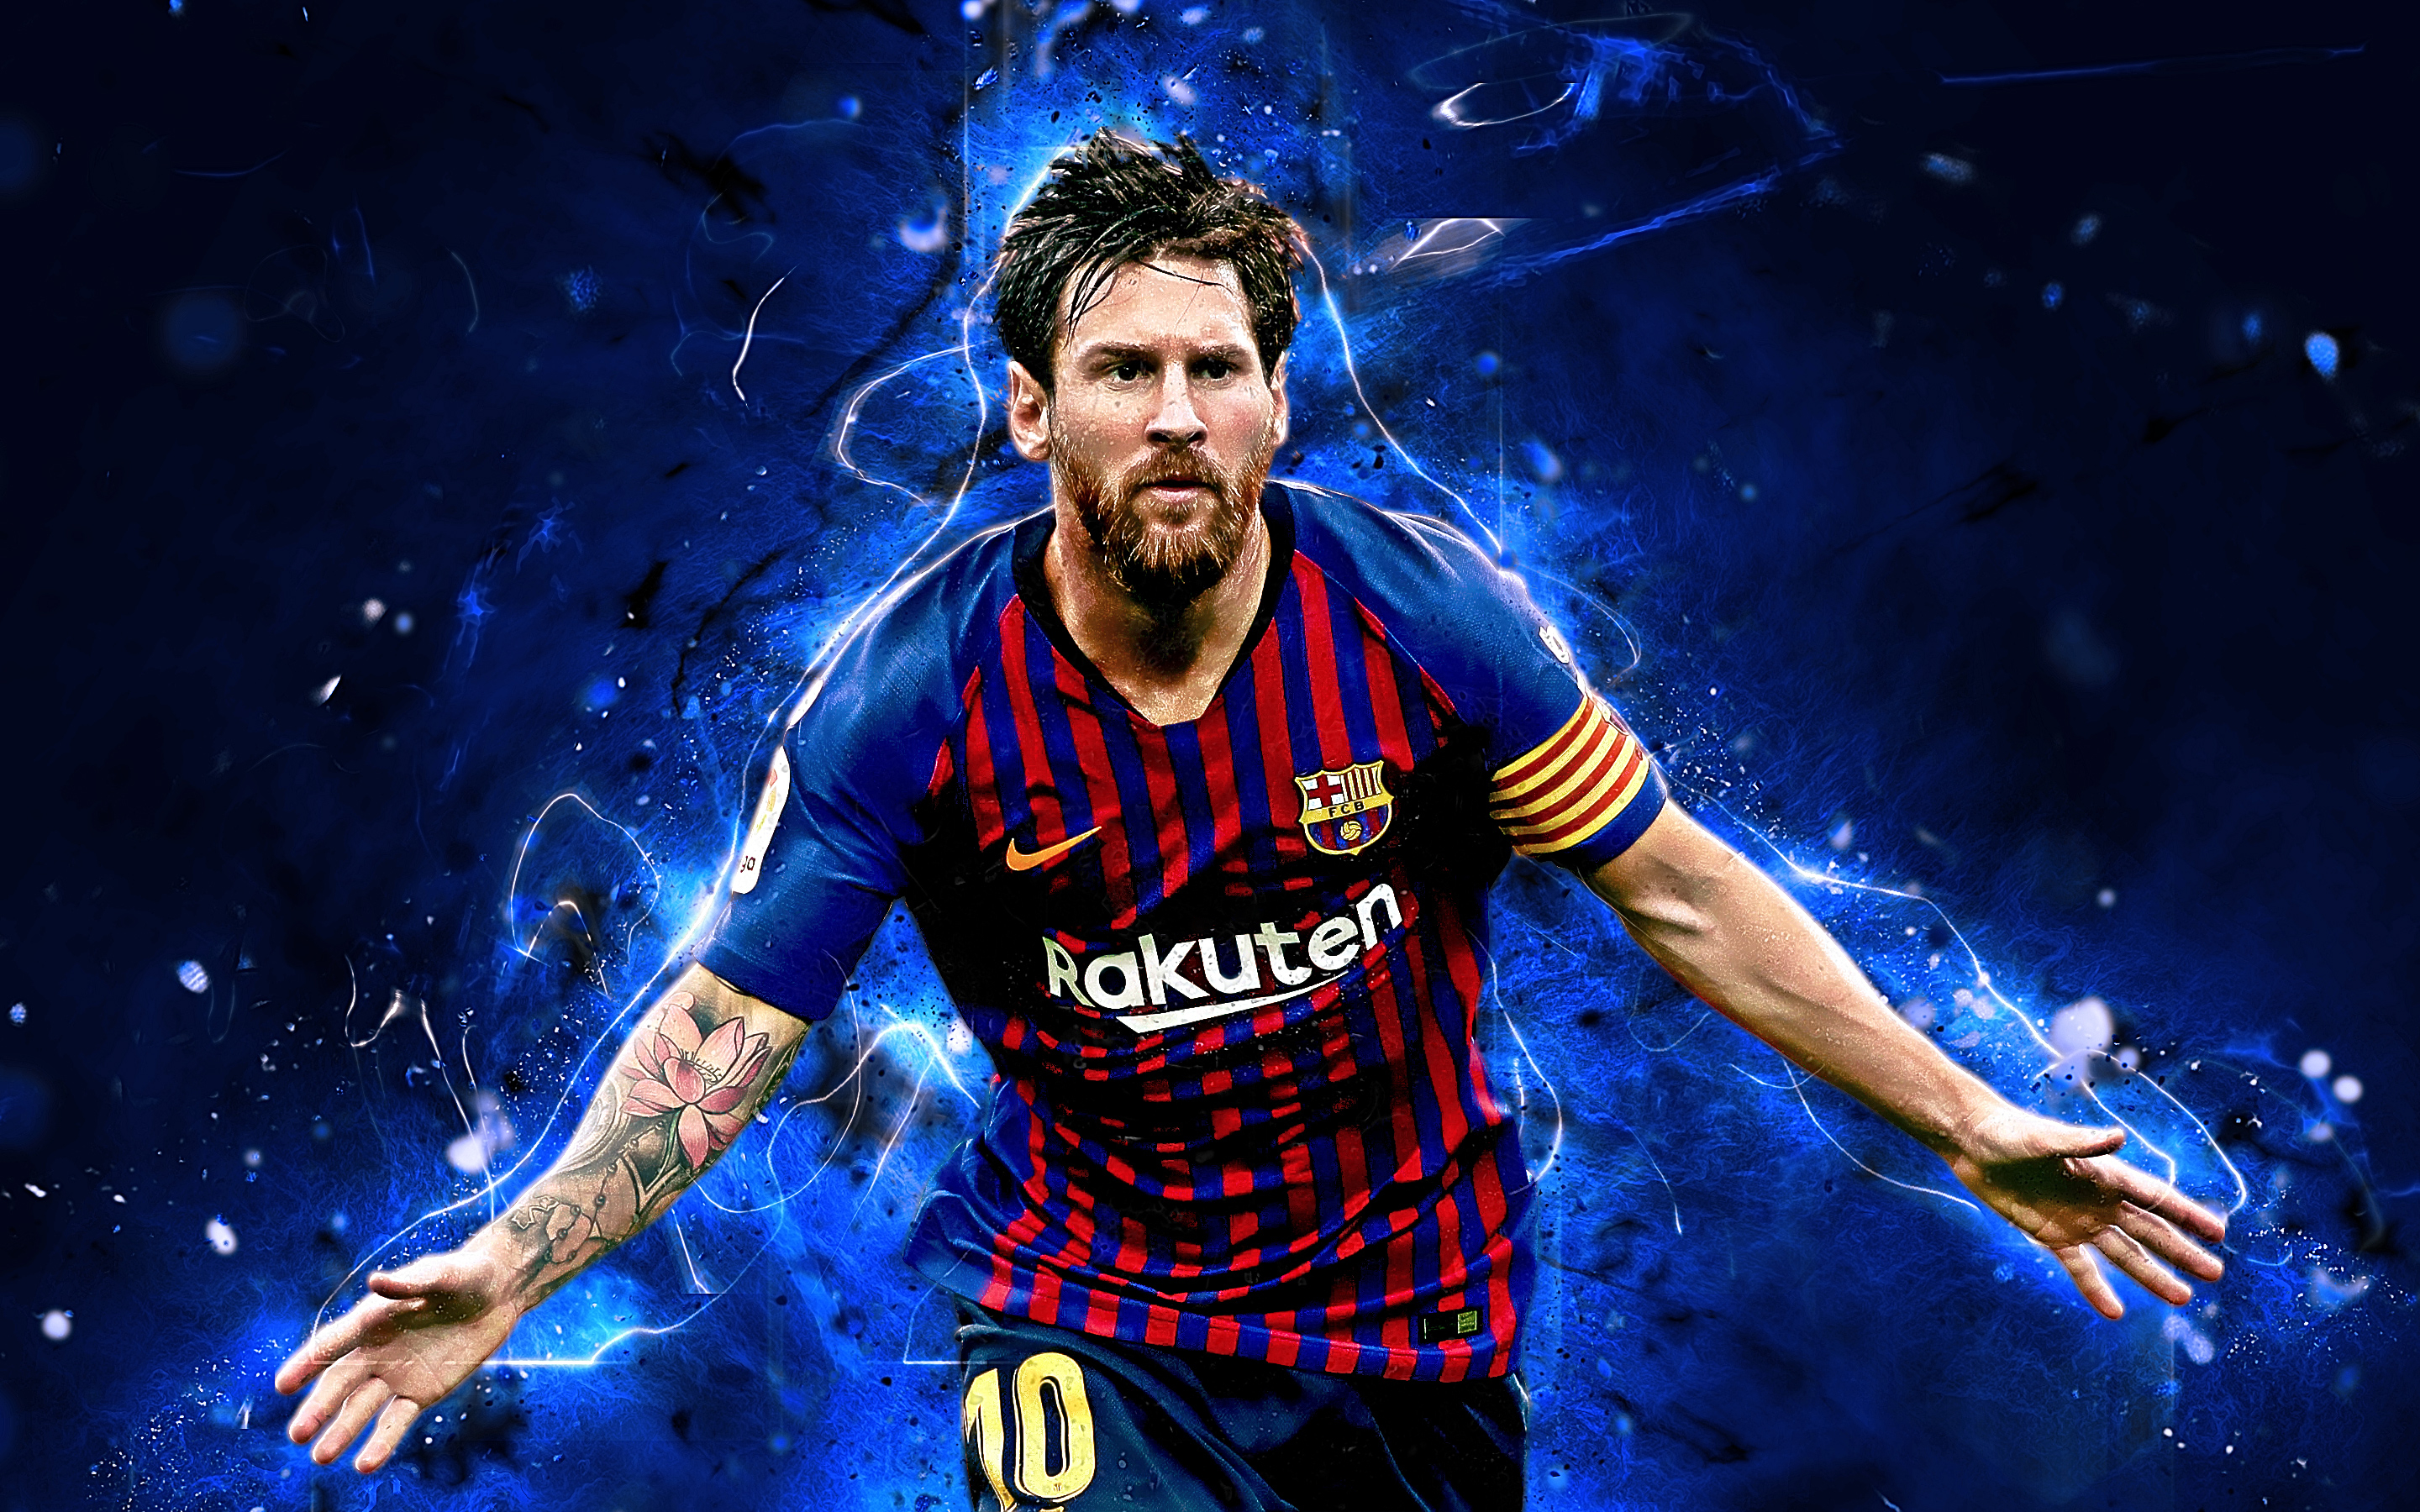 Hãy chiêm ngưỡng hình ảnh của Lionel Messi, ngôi sao bóng đá đẳng cấp thế giới của Barcelona. Với kỹ năng và tài năng \